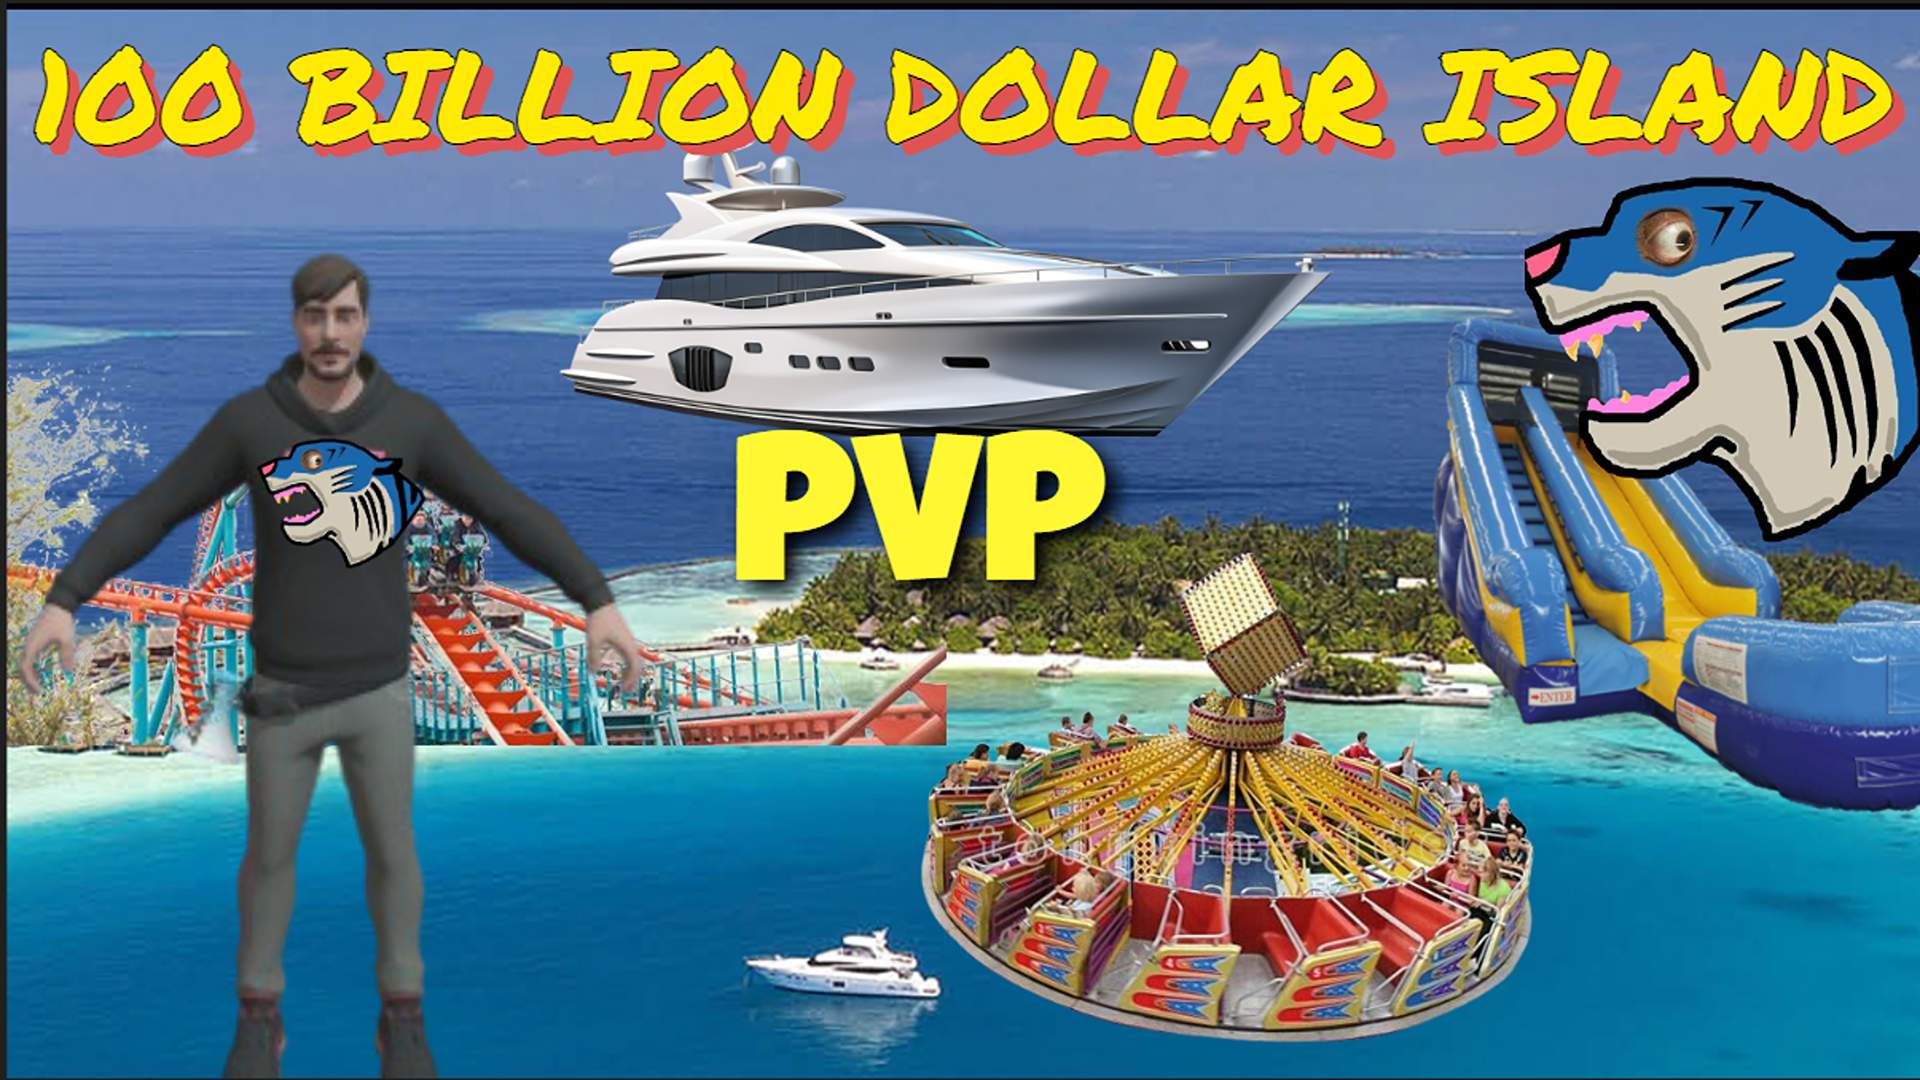 100 BILLION DOLLAR ISLAND PVP